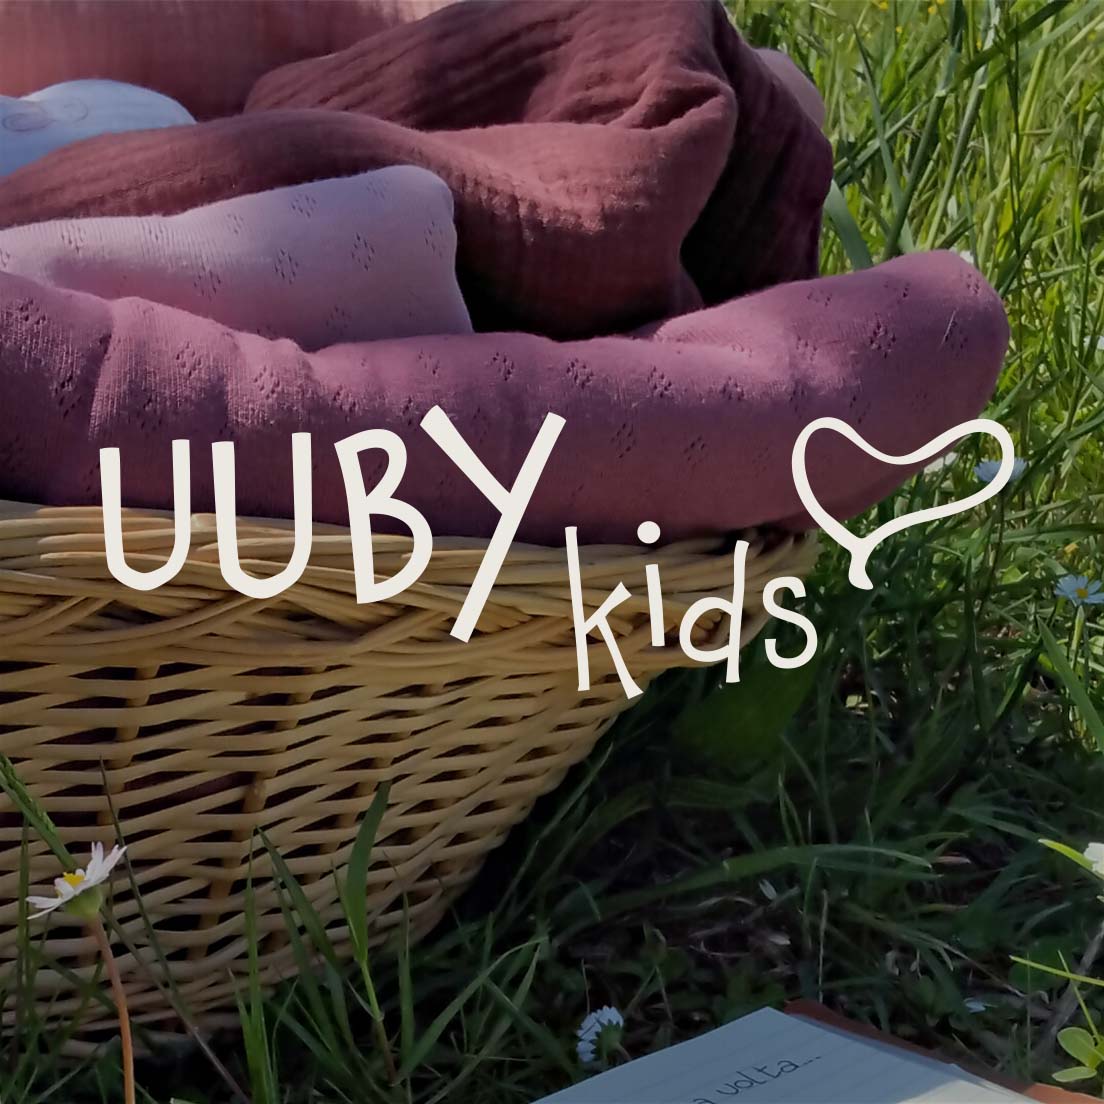 comunicazione e gestione dell'immagine per Uuby kids